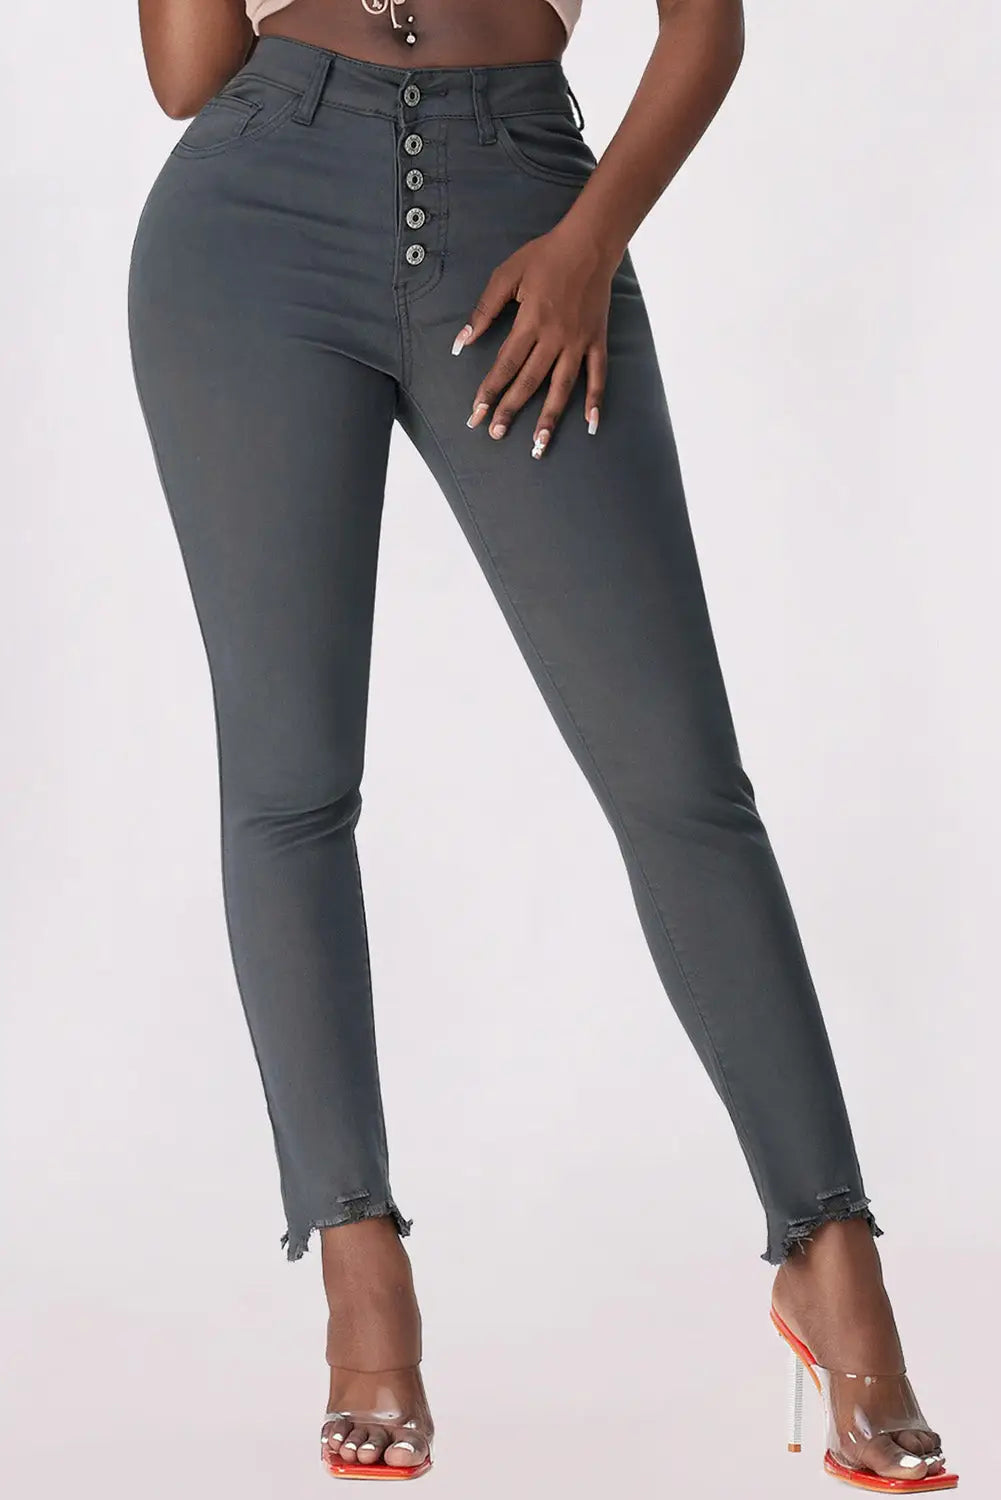 Green plain high waist buttons frayed cropped denim jeans - gray / 4 / 98% cotton + 2% elastane